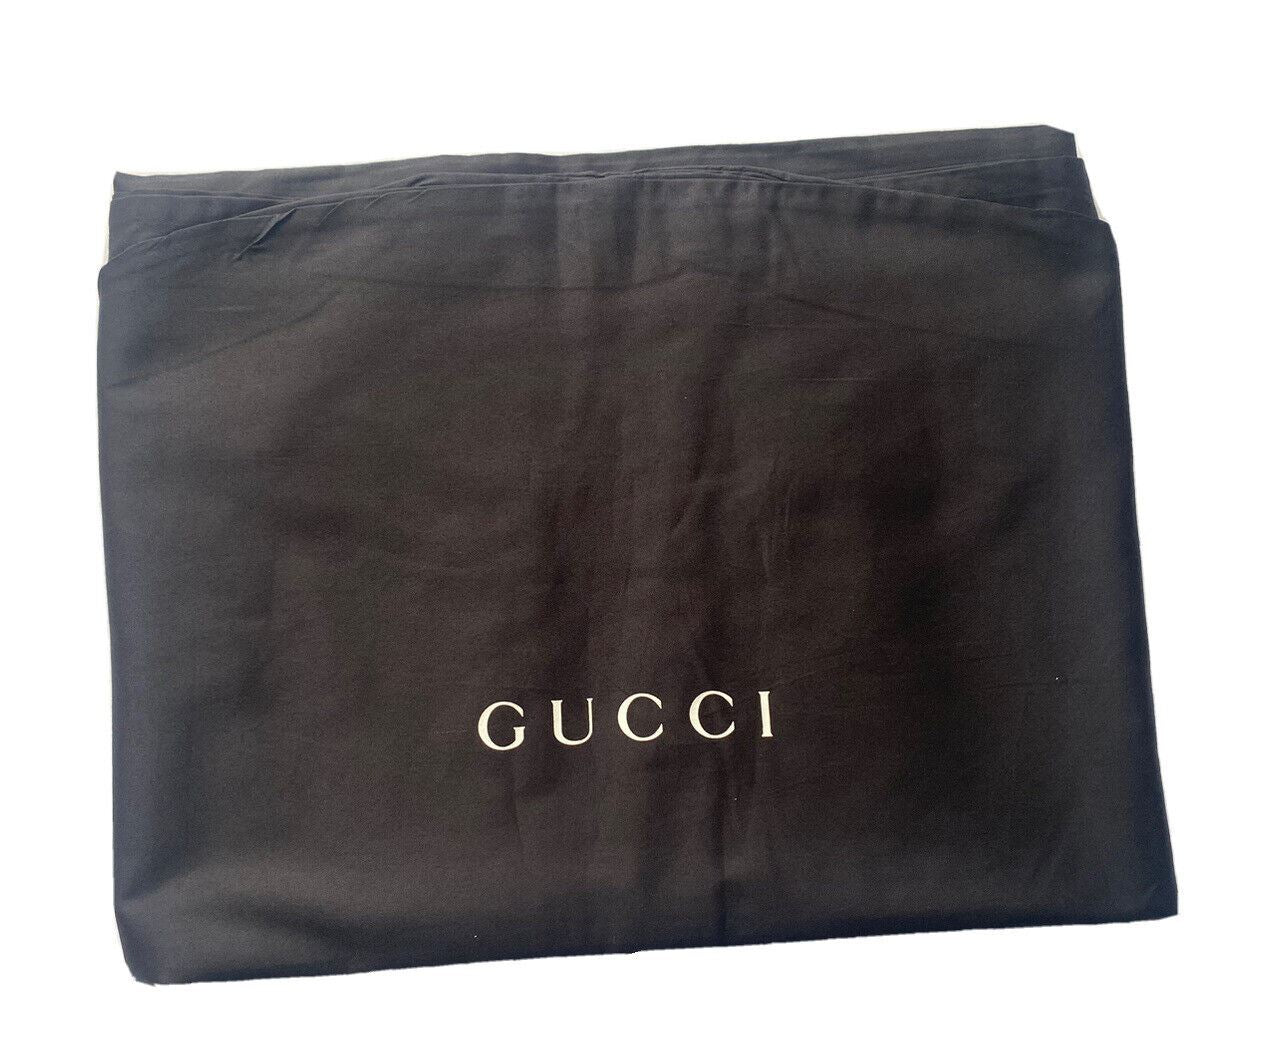 Новая хлопковая сумка для одежды Gucci, пальто/комбинезон/платье, черная, 54,5 дюйма Д x 33,5 дюйма Ш 